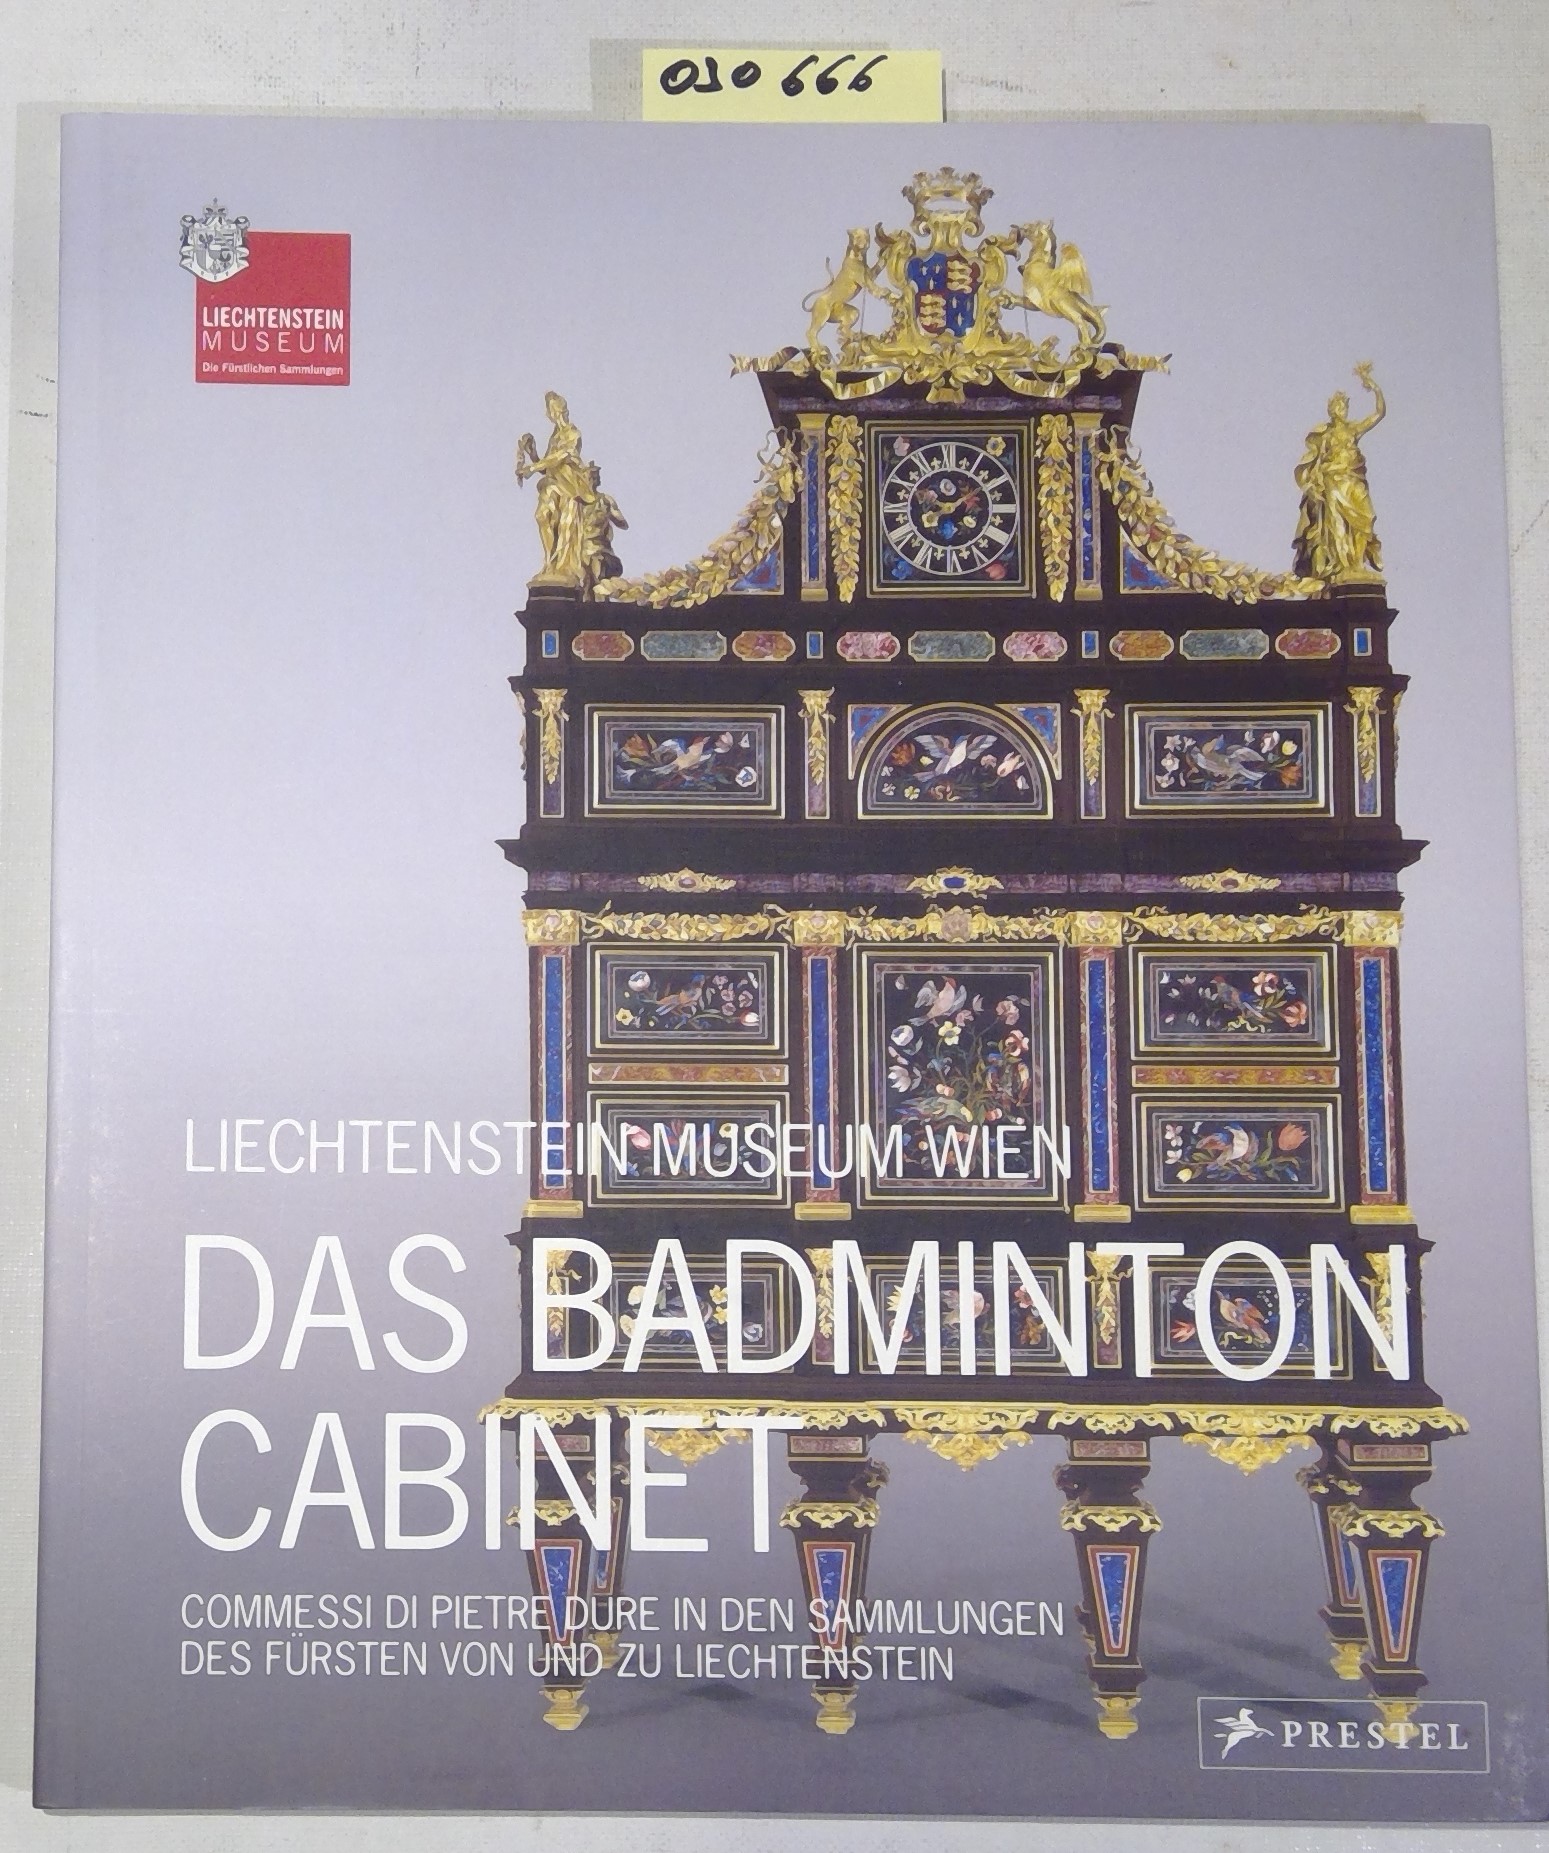 Das Badminton Cabinet. Commessi di pietre dure in den Sammlungen des Fürsten von und zu Liechtenstein - Kräftner, Johann - Herausgeber